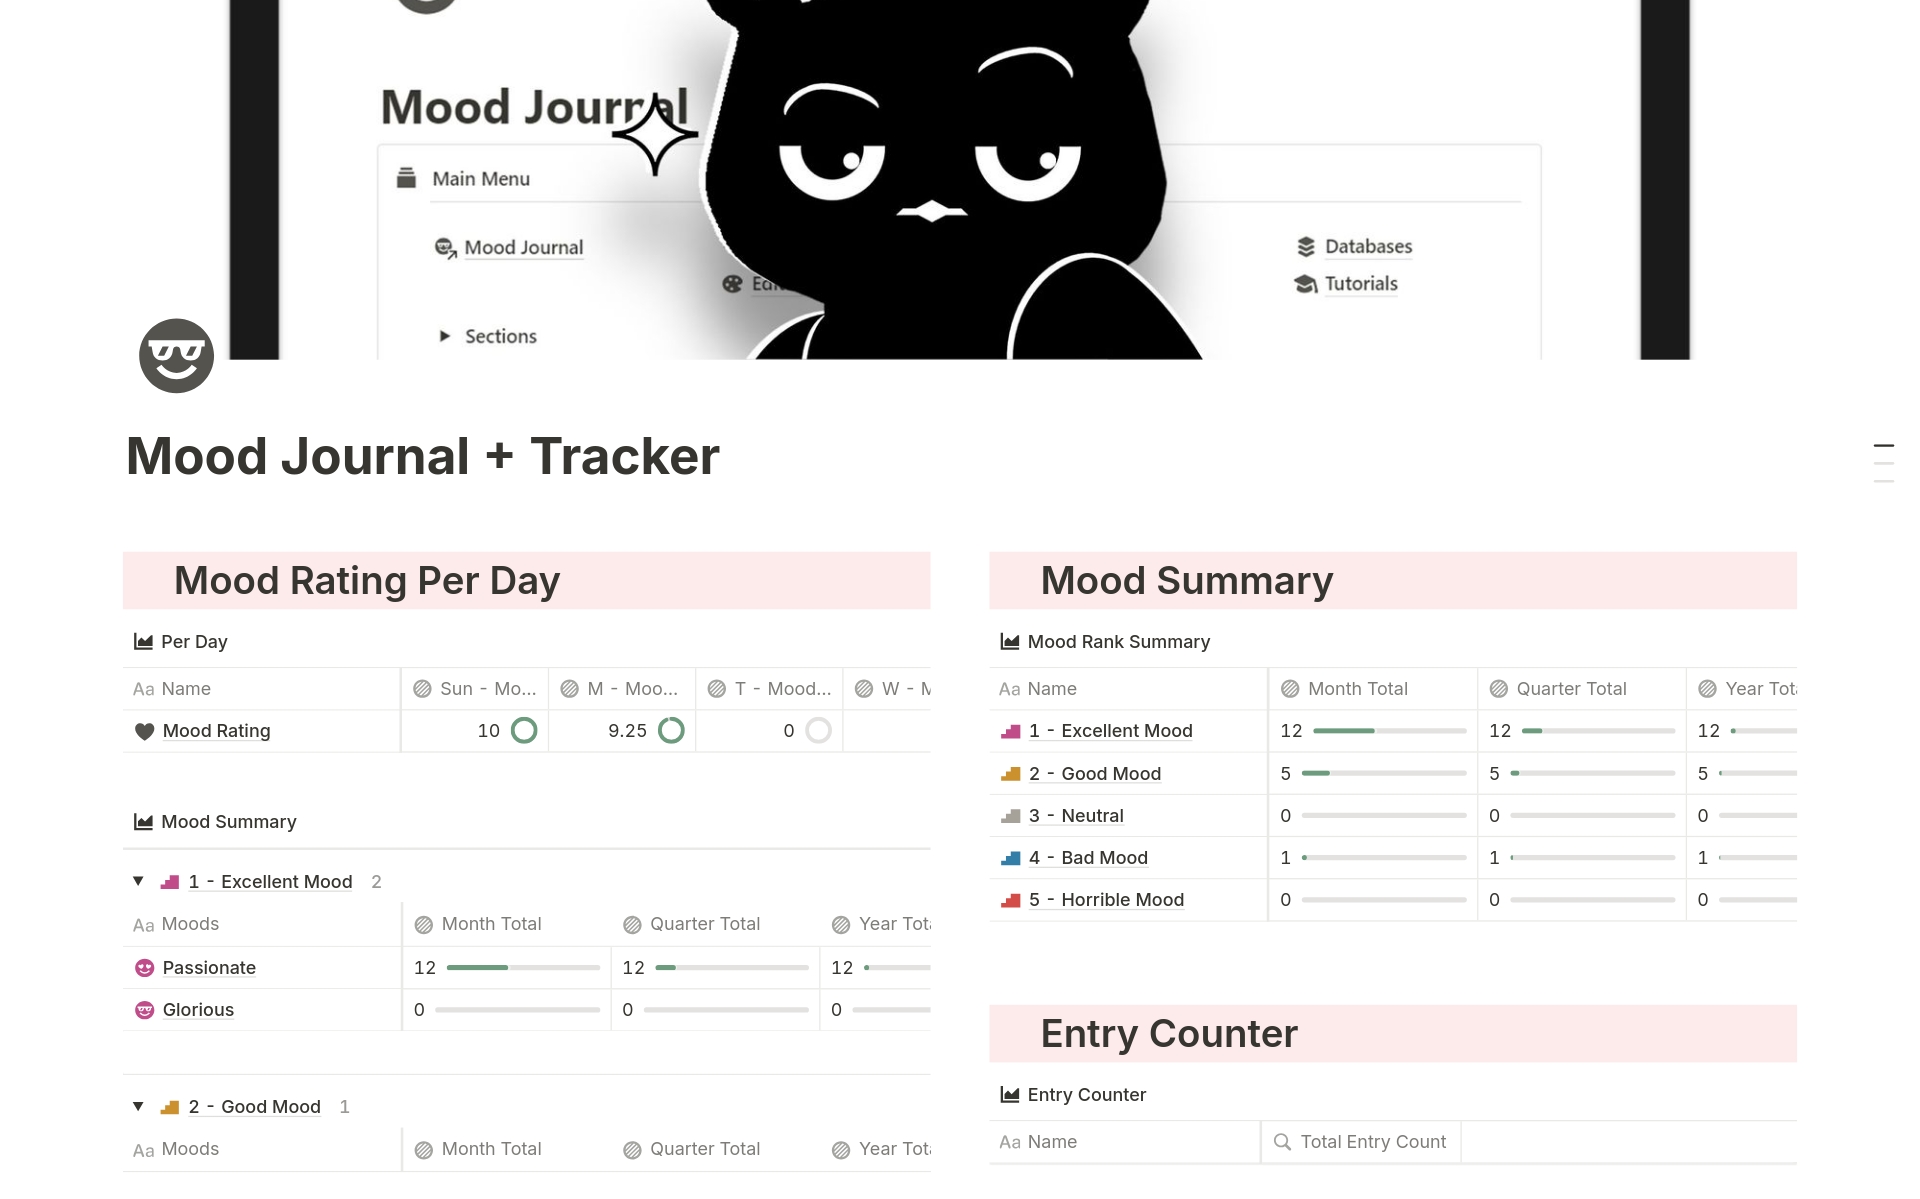 Uma prévia do modelo para Mood Journal + Tracker